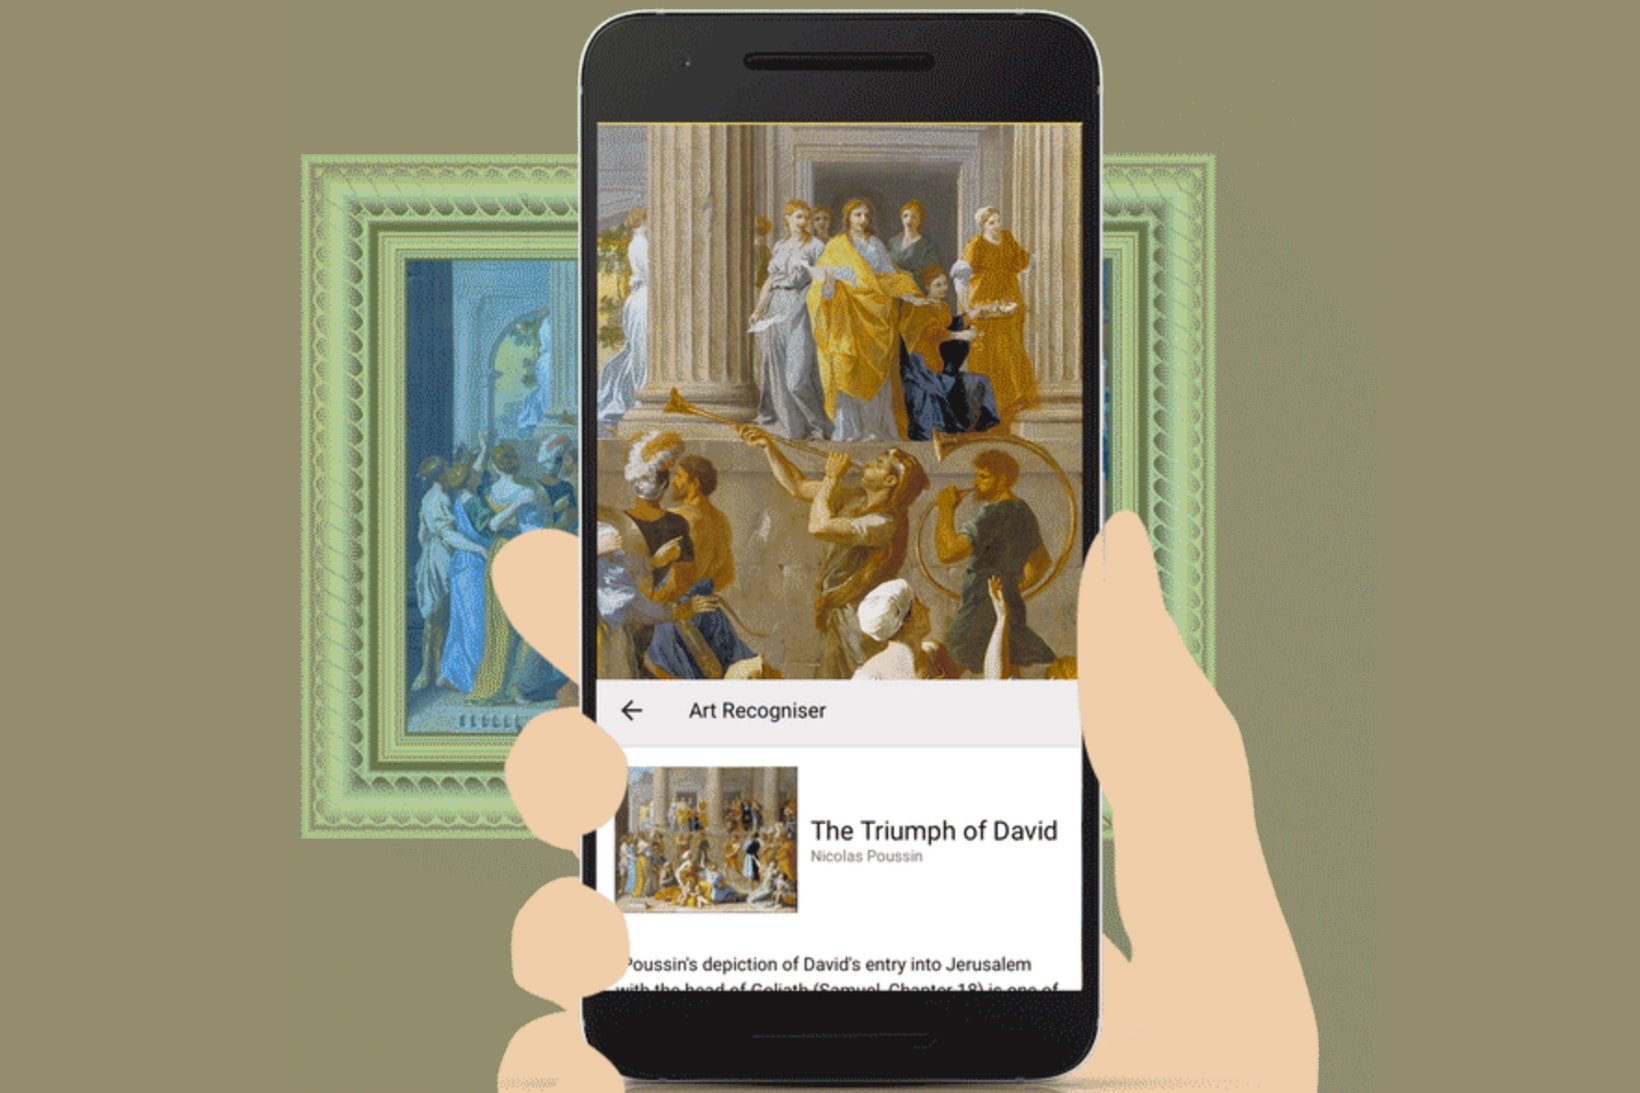 Google Arts & Culture Selfie App Store Play 2016 Paintings